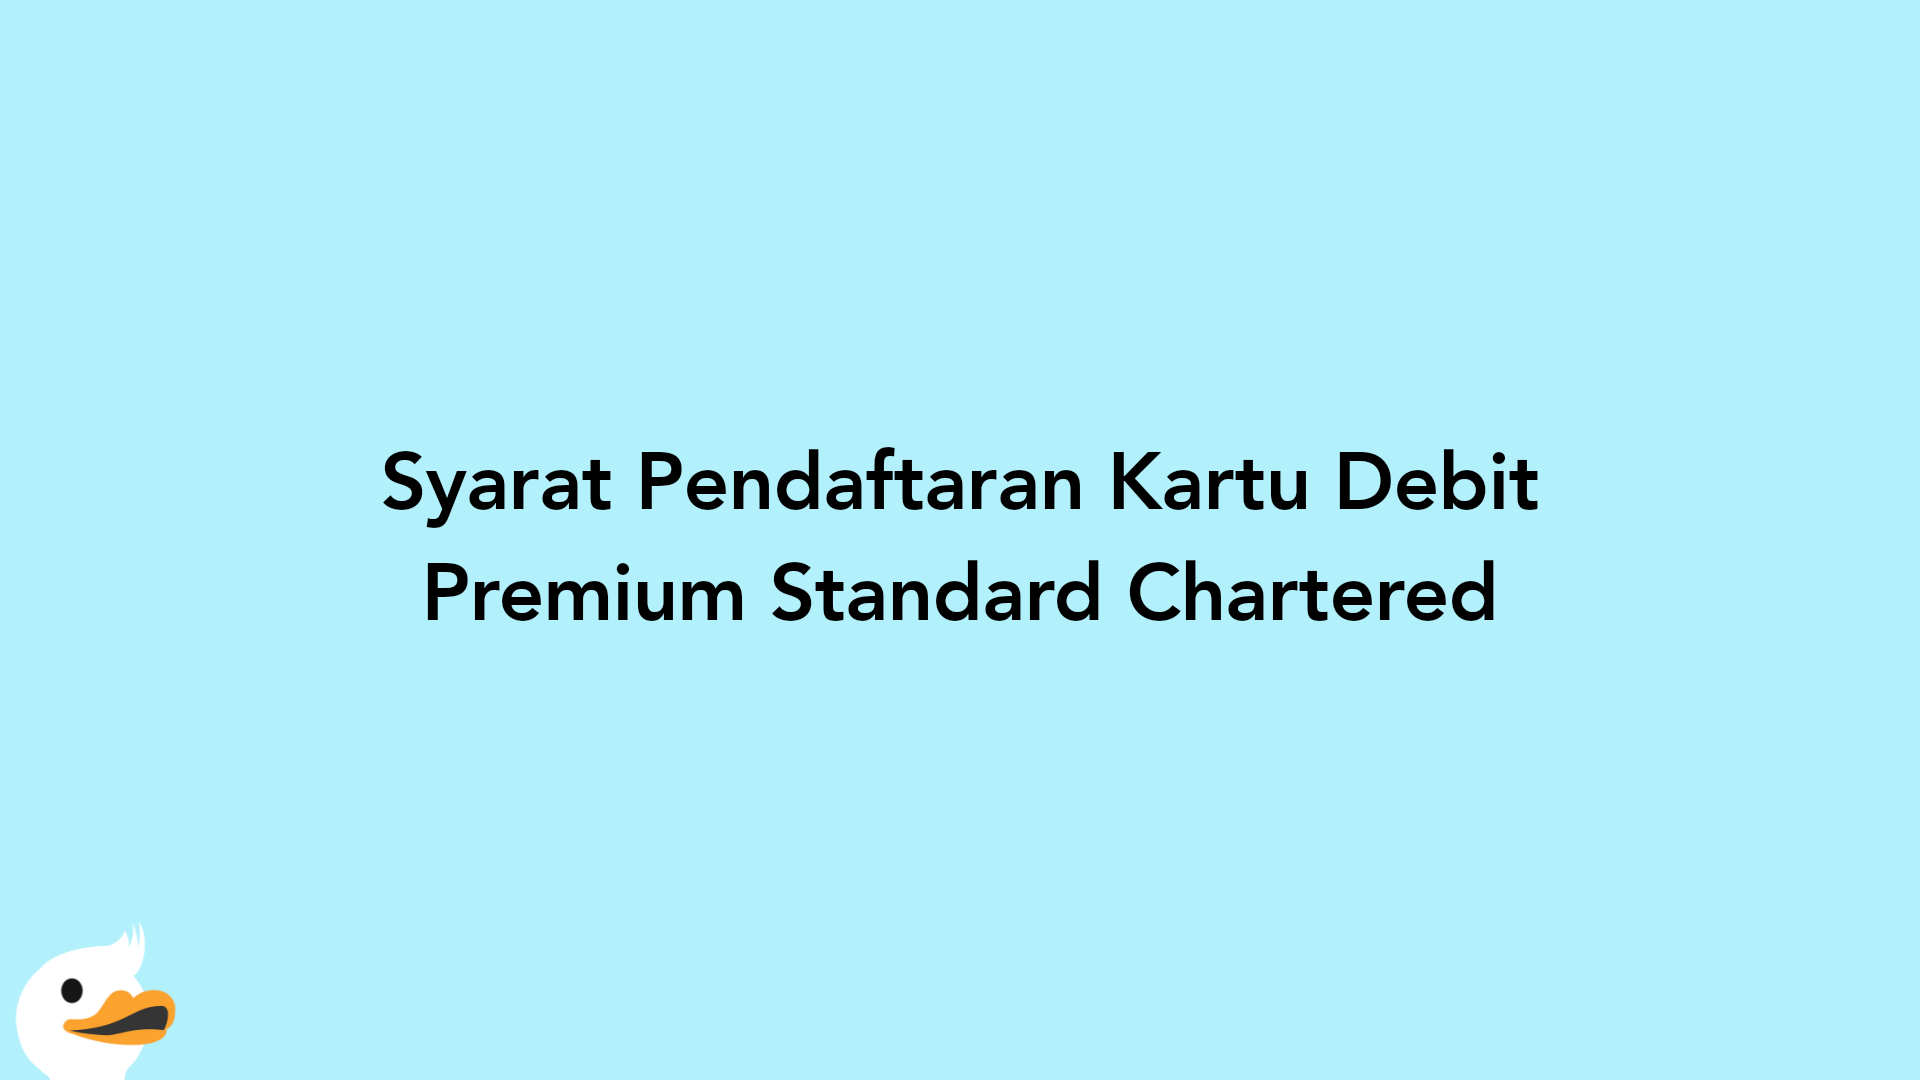 Syarat Pendaftaran Kartu Debit Premium Standard Chartered